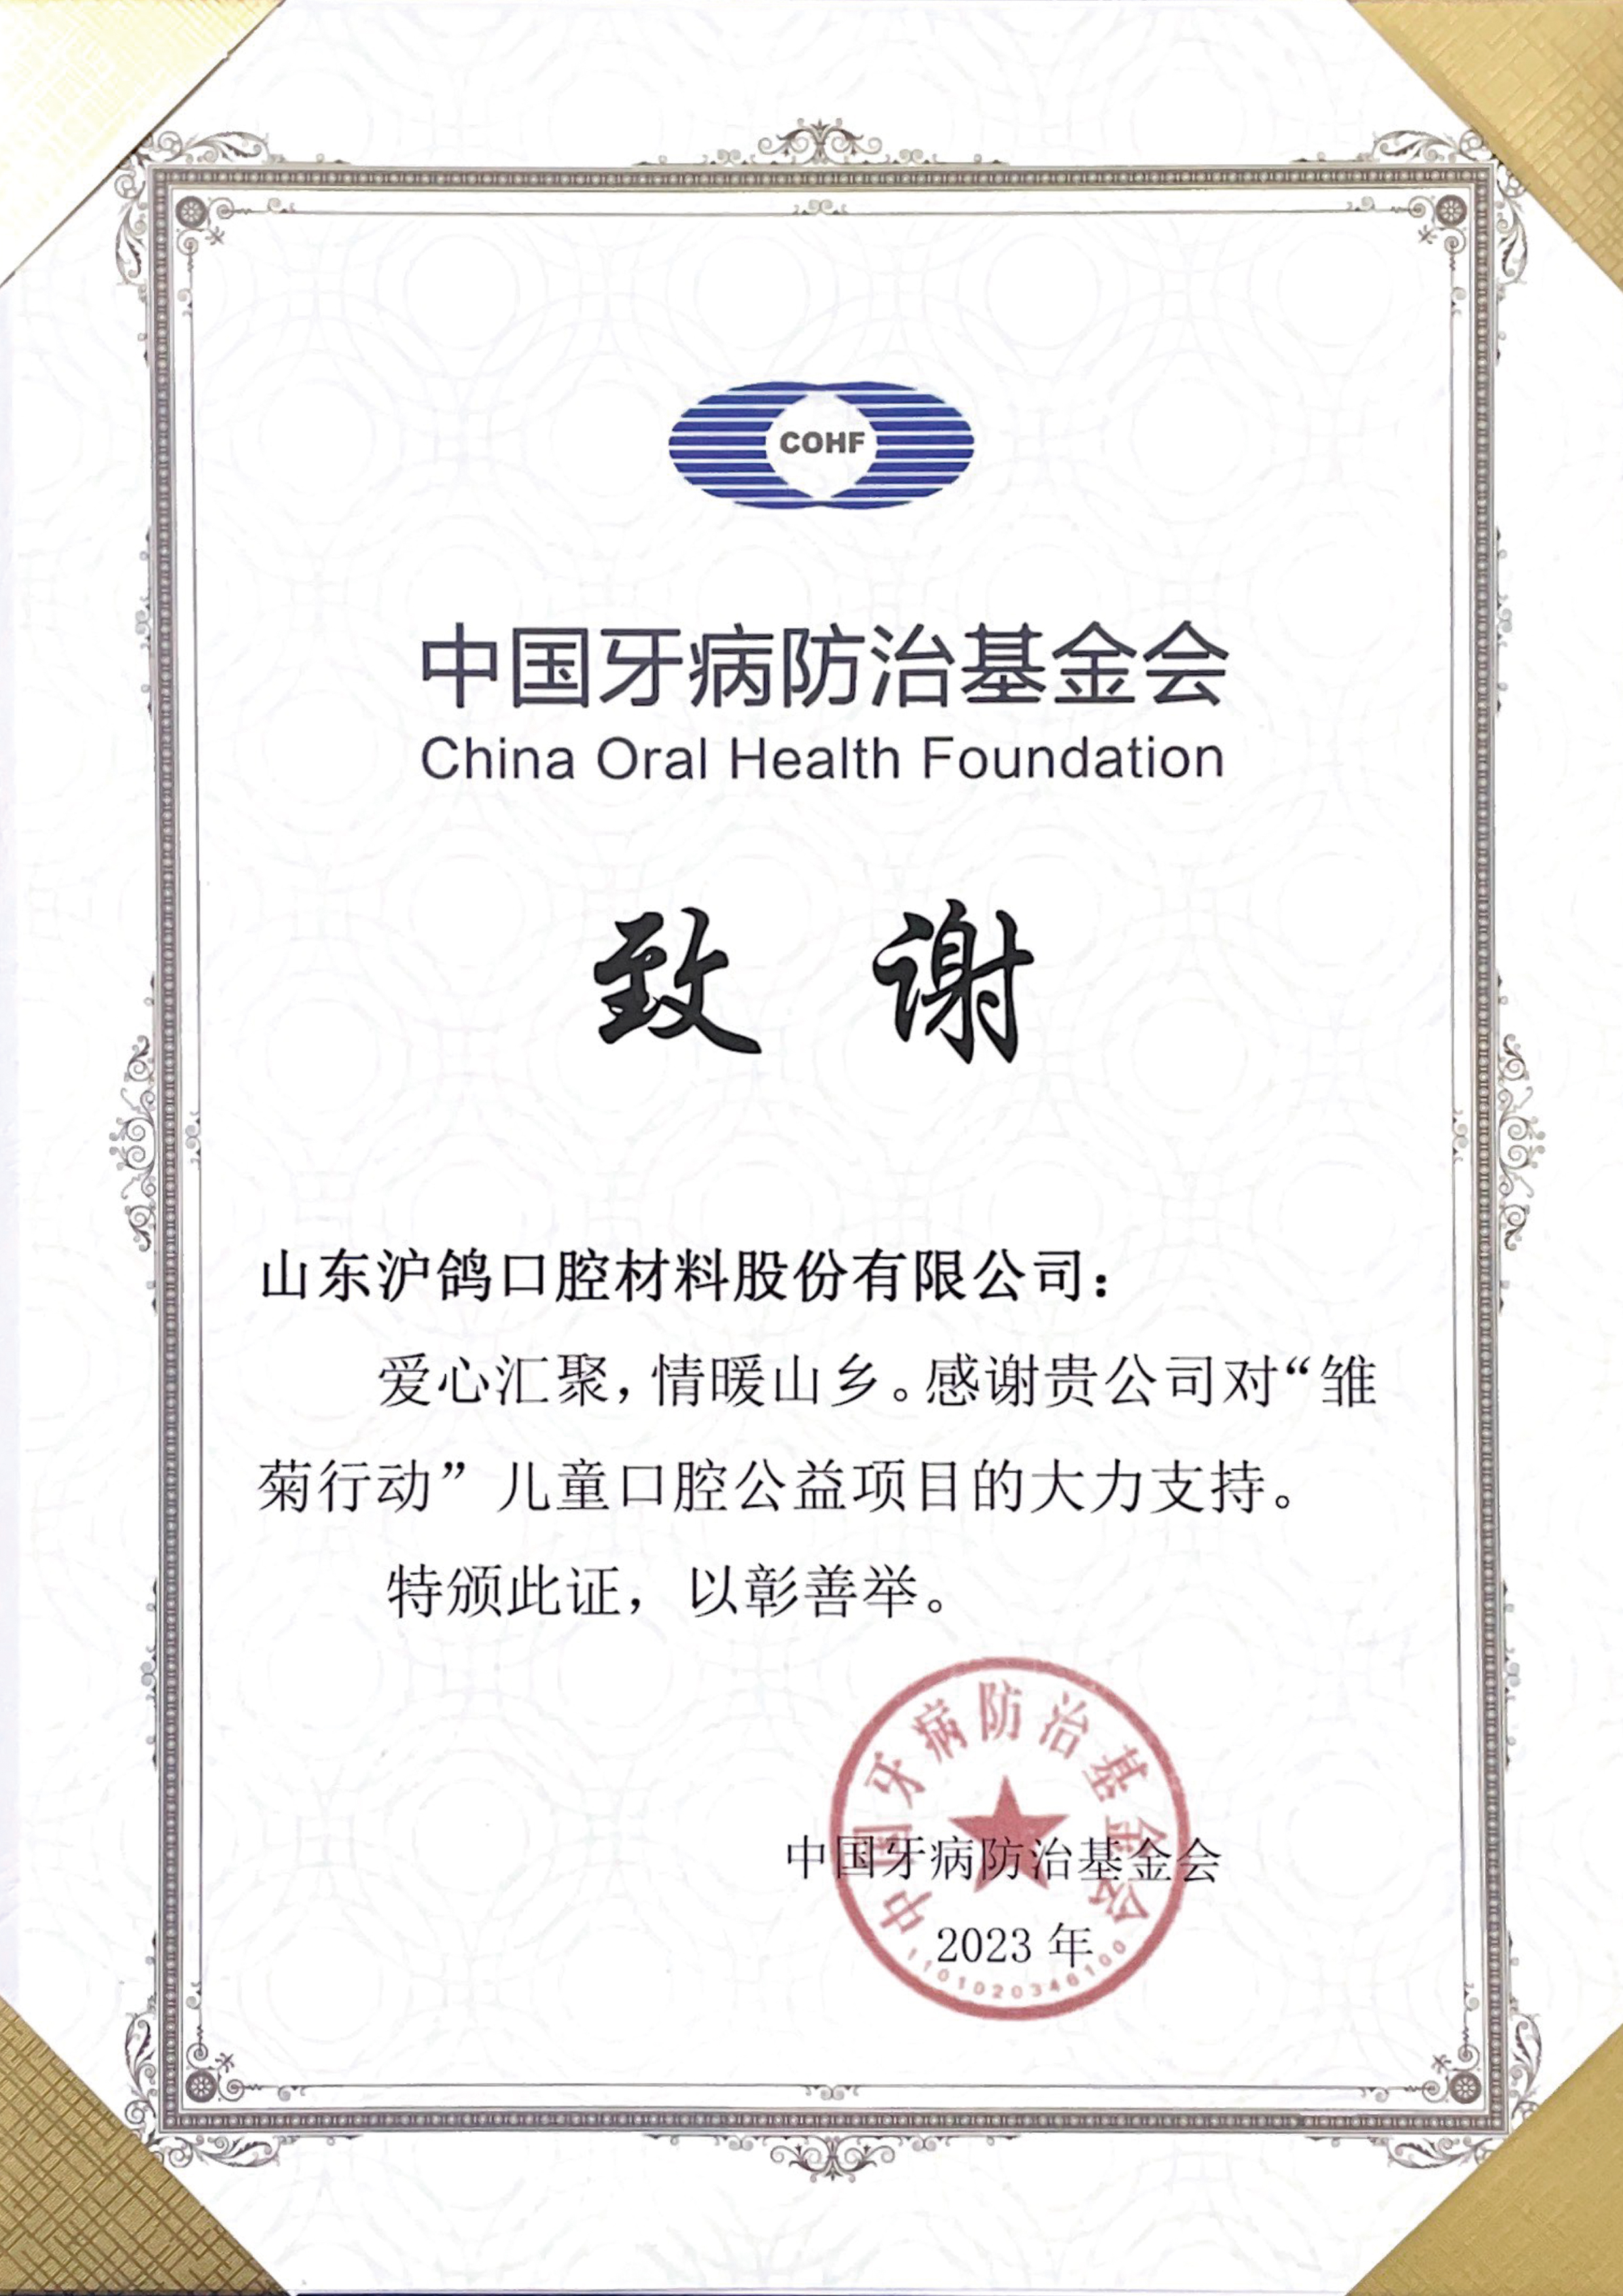 企业新闻|中国牙病防治基金会“雏菊行动”项目组向沪鸽口腔颁发感谢状